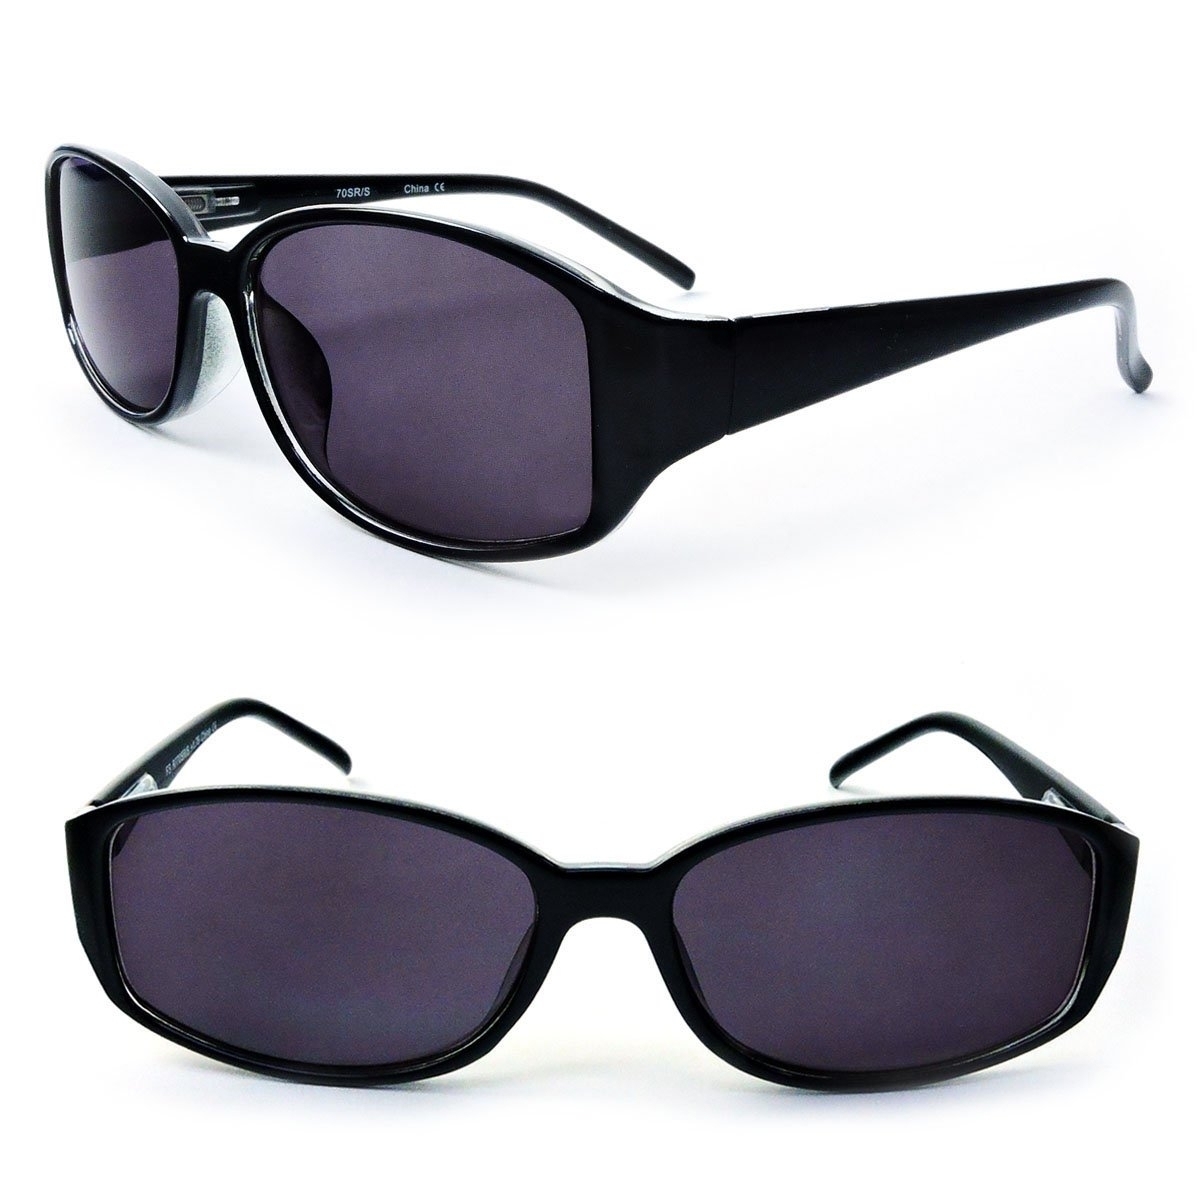 Classic Sun Readers Full Lens Spring Hinges Reading Sunglasses For Women - Black, +2.75